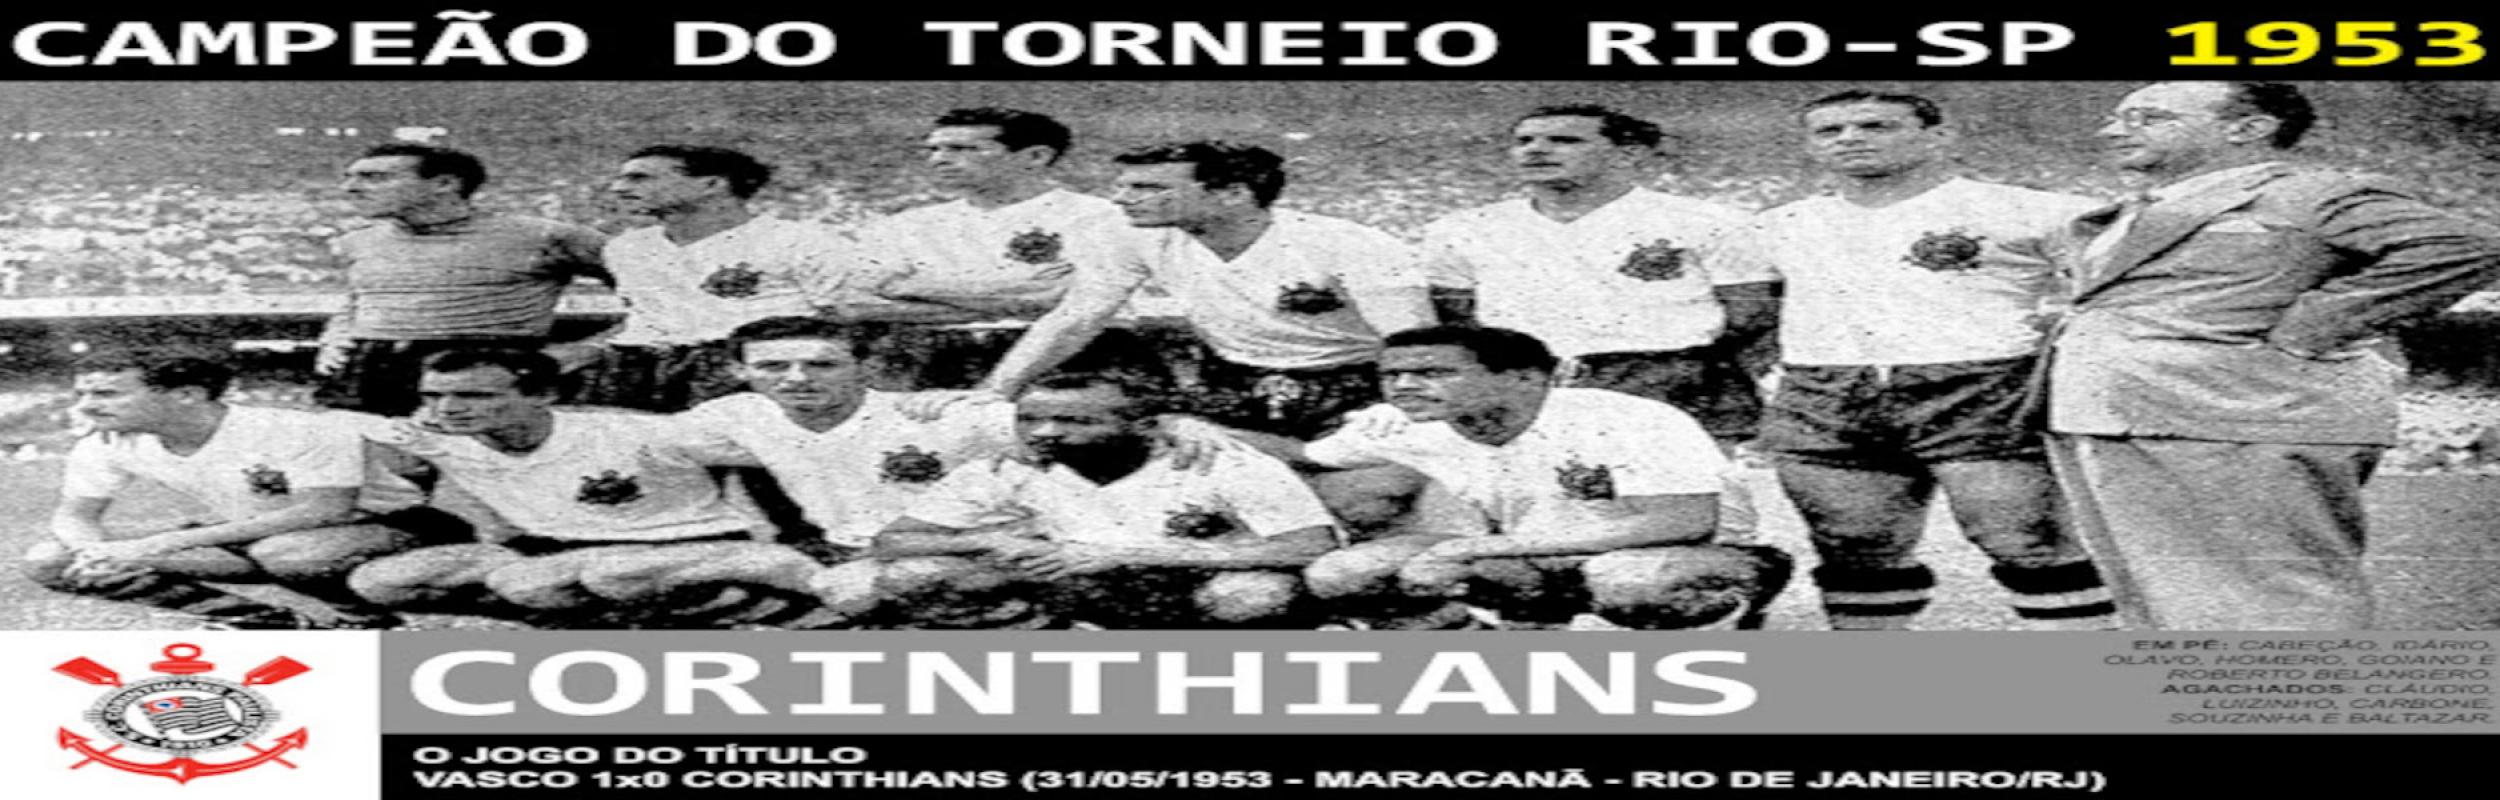 Torneio Rio-São Paulo 1953